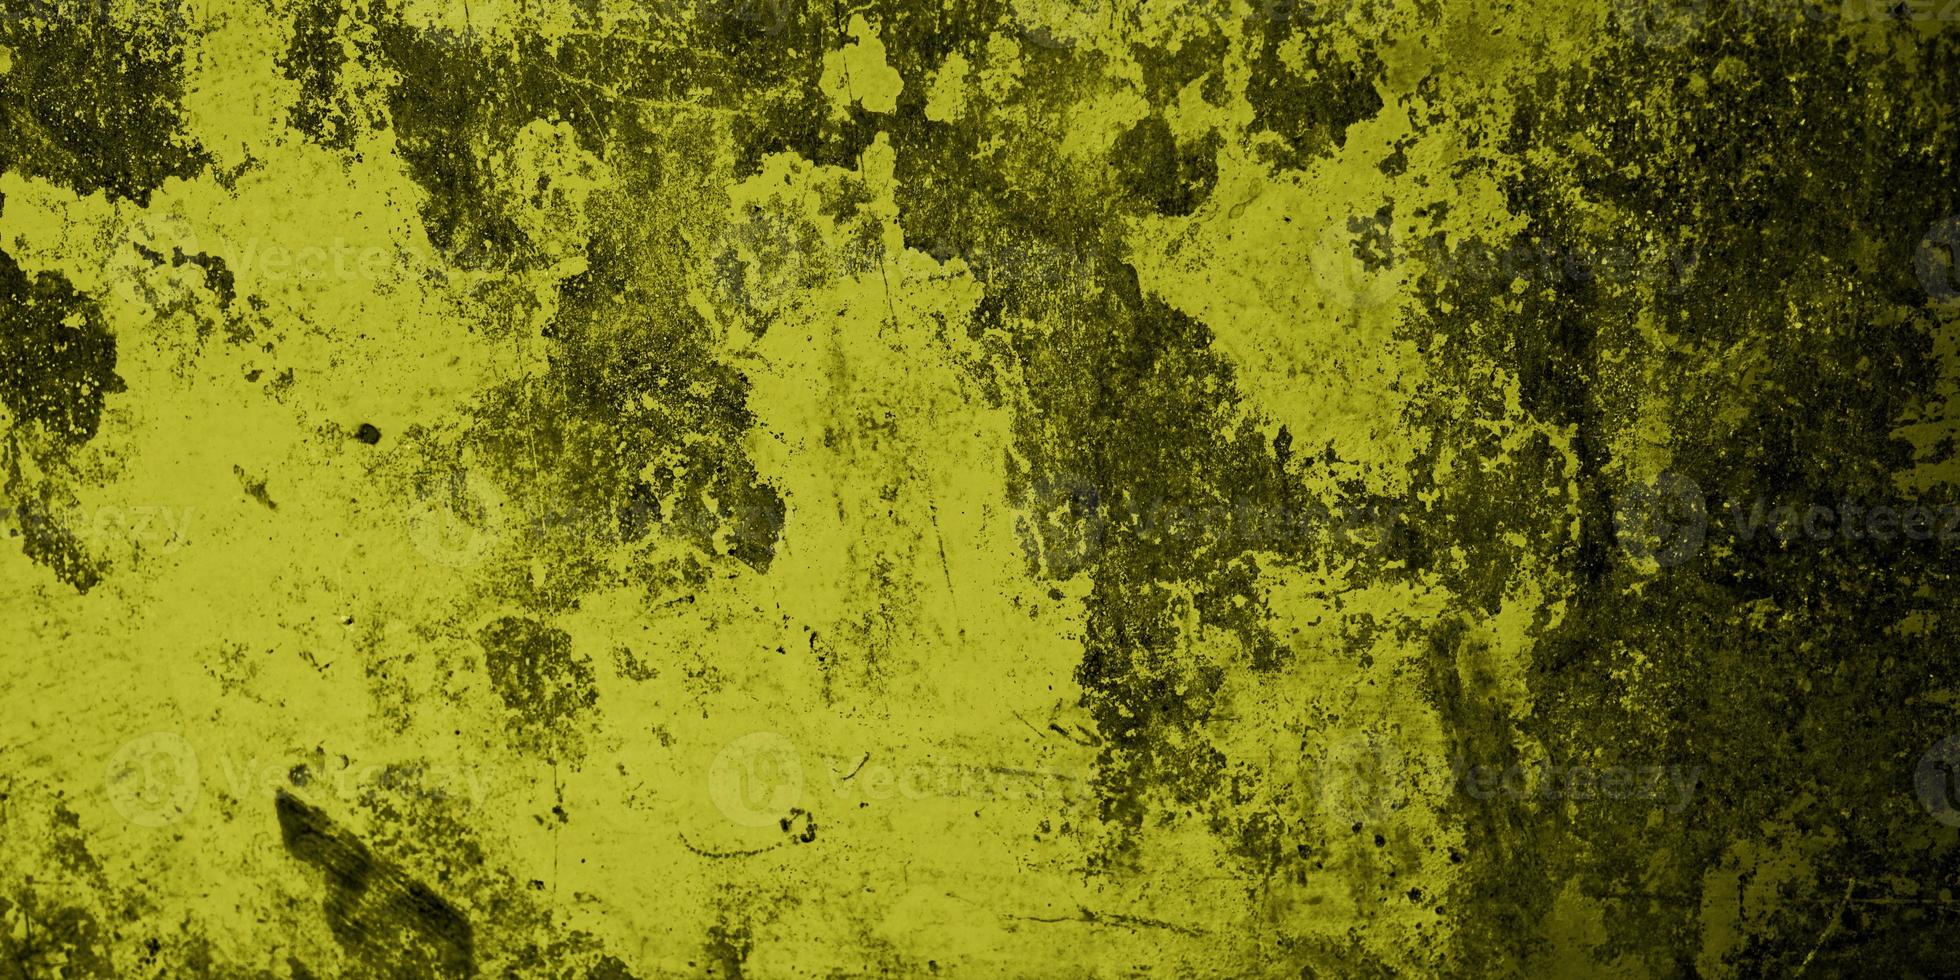 paredes amarelas estão sujas e cheias de musgo foto